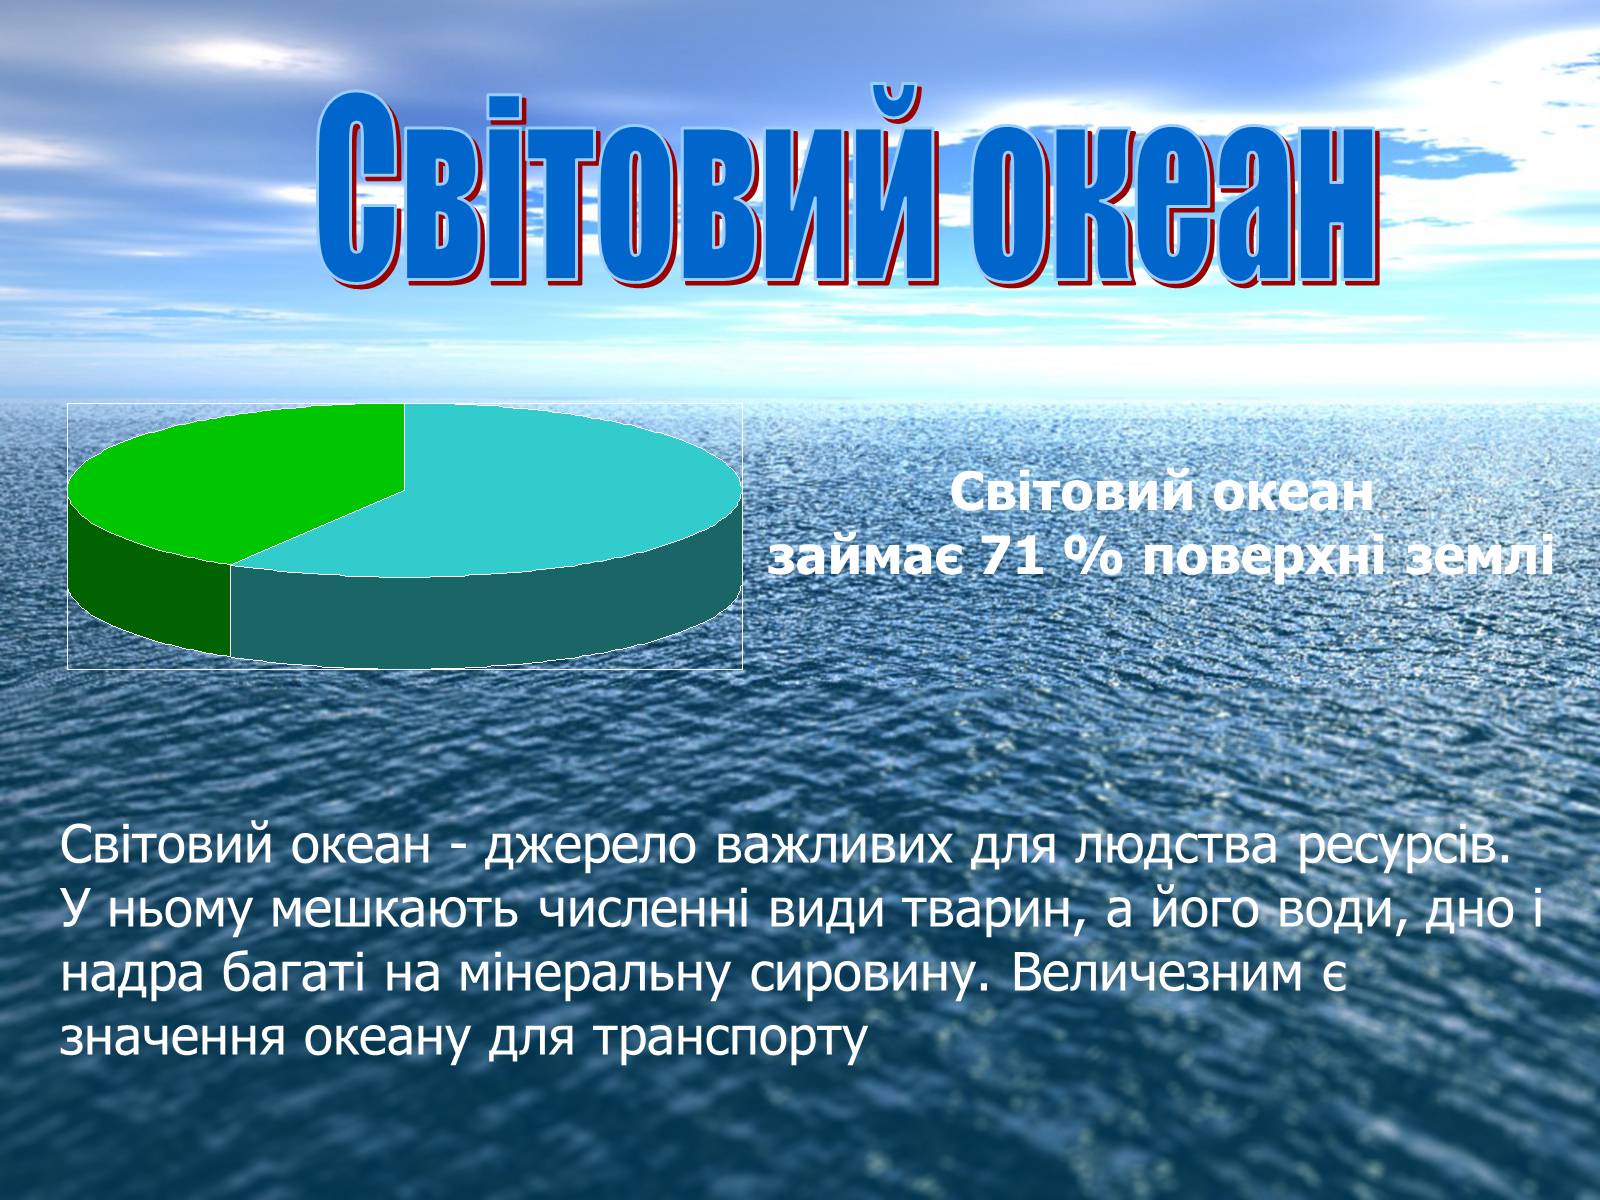 Результаты деятельности океана